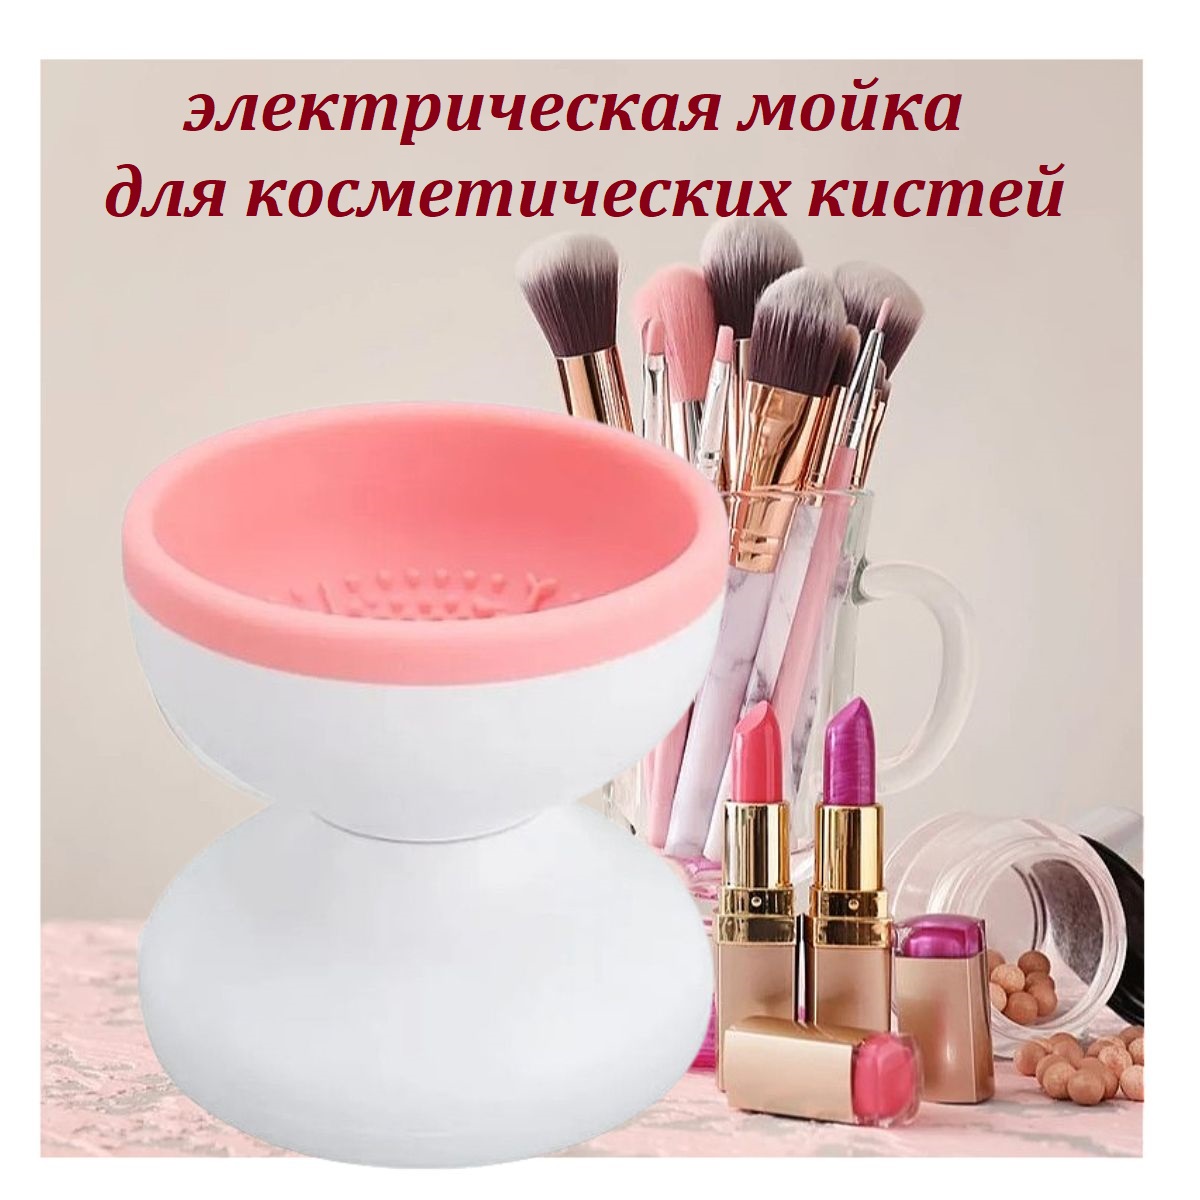 Электрическая машинка для очищения косметических кистей розовая очиститель кистей для мойки и сушки косметических аксессуаров макияжа белый